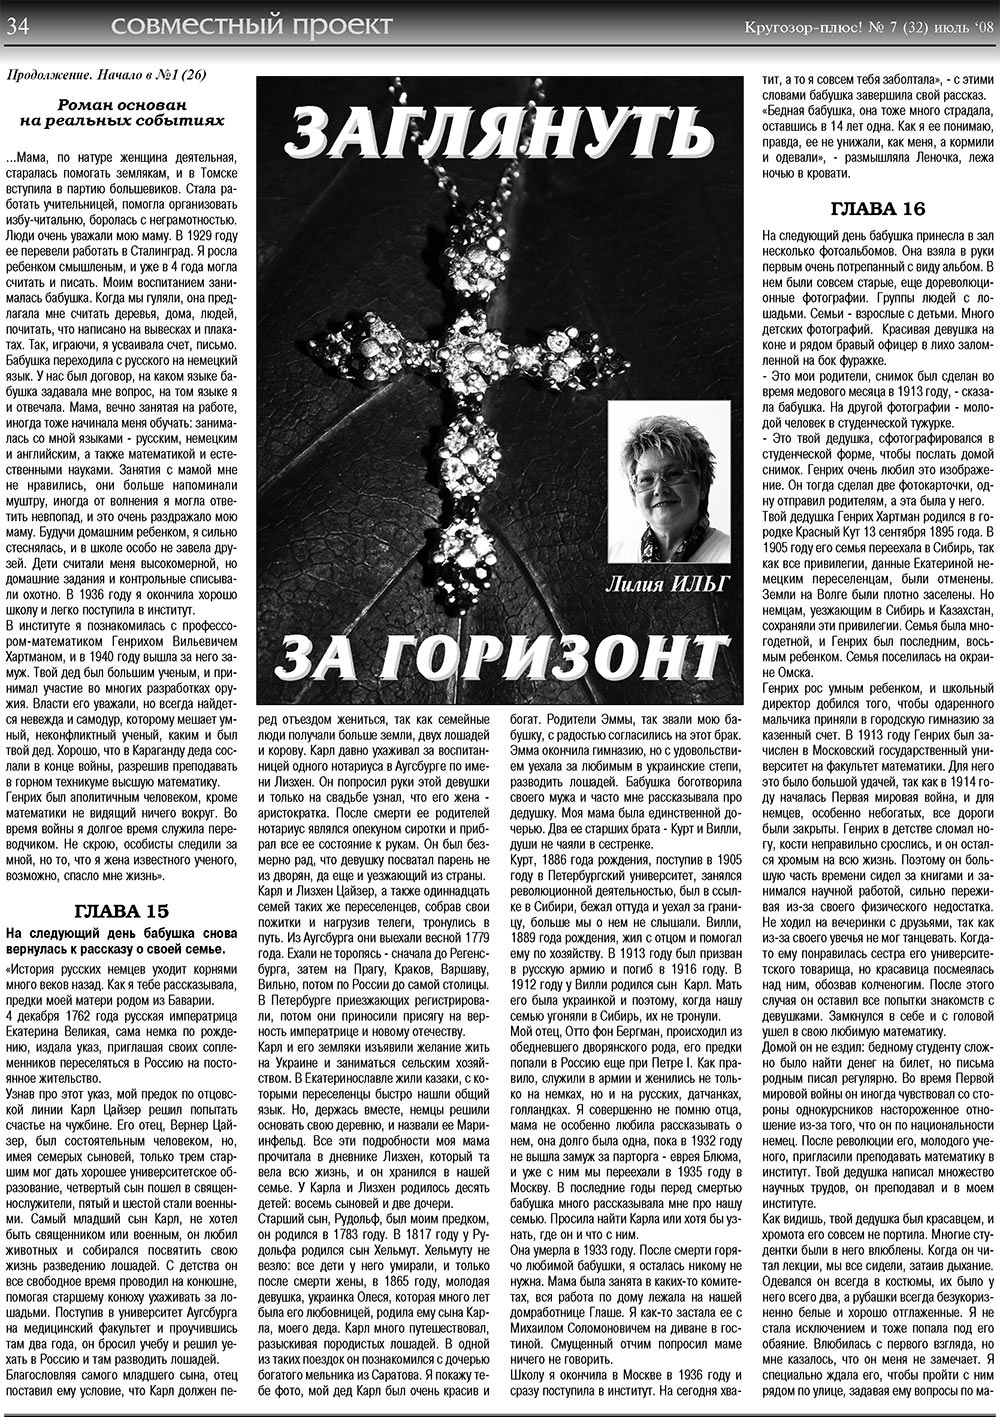 Кругозор плюс!, газета. 2008 №7 стр.34